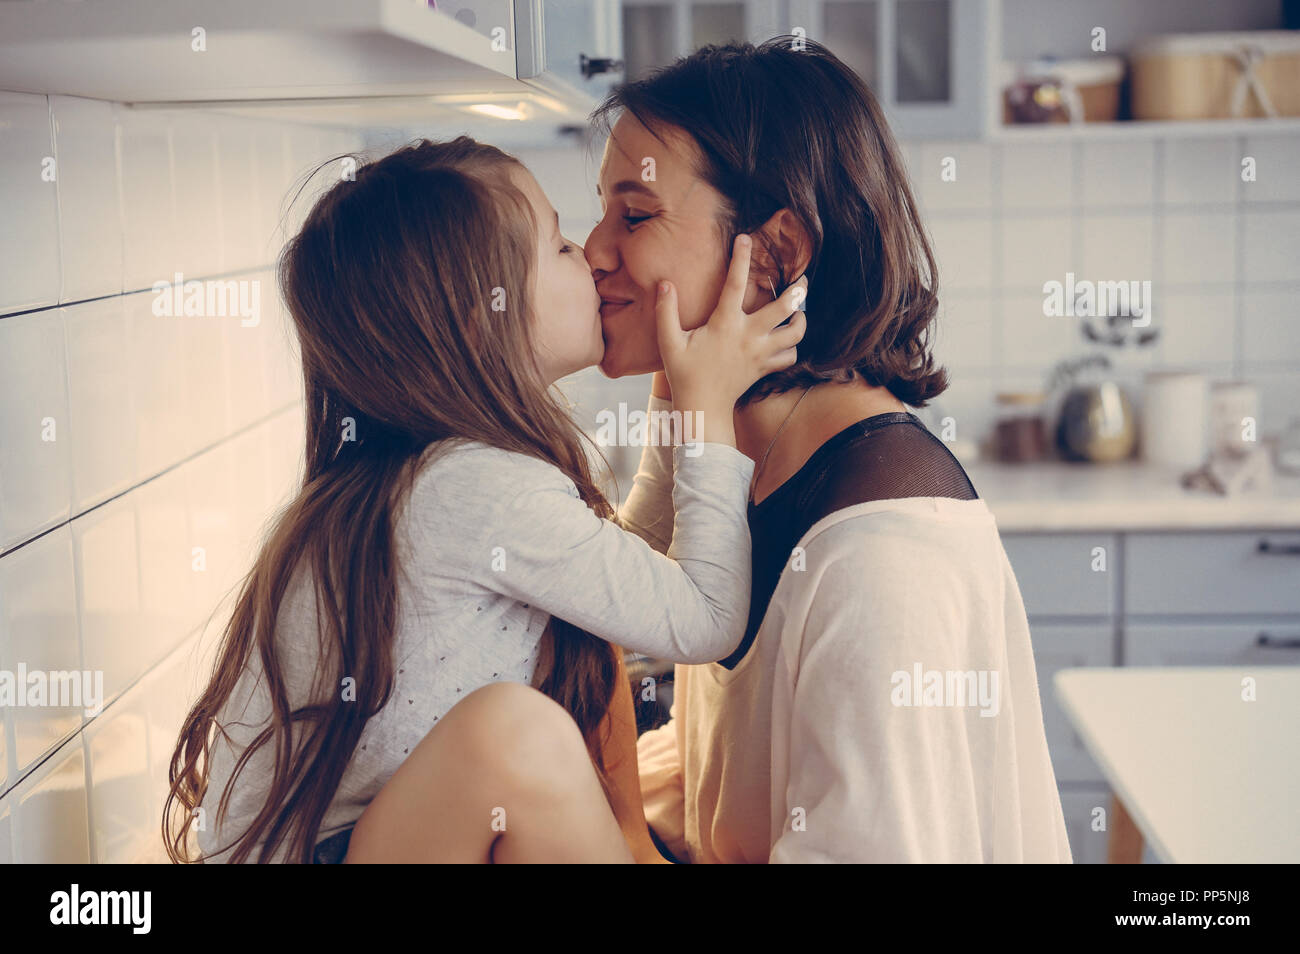 Лесбиянки про мамы. Мама с дочкой поцелуй. Мама целует дочь. Молодые лесбияночки на кухне. Мать и дочь поцелуй с языком.